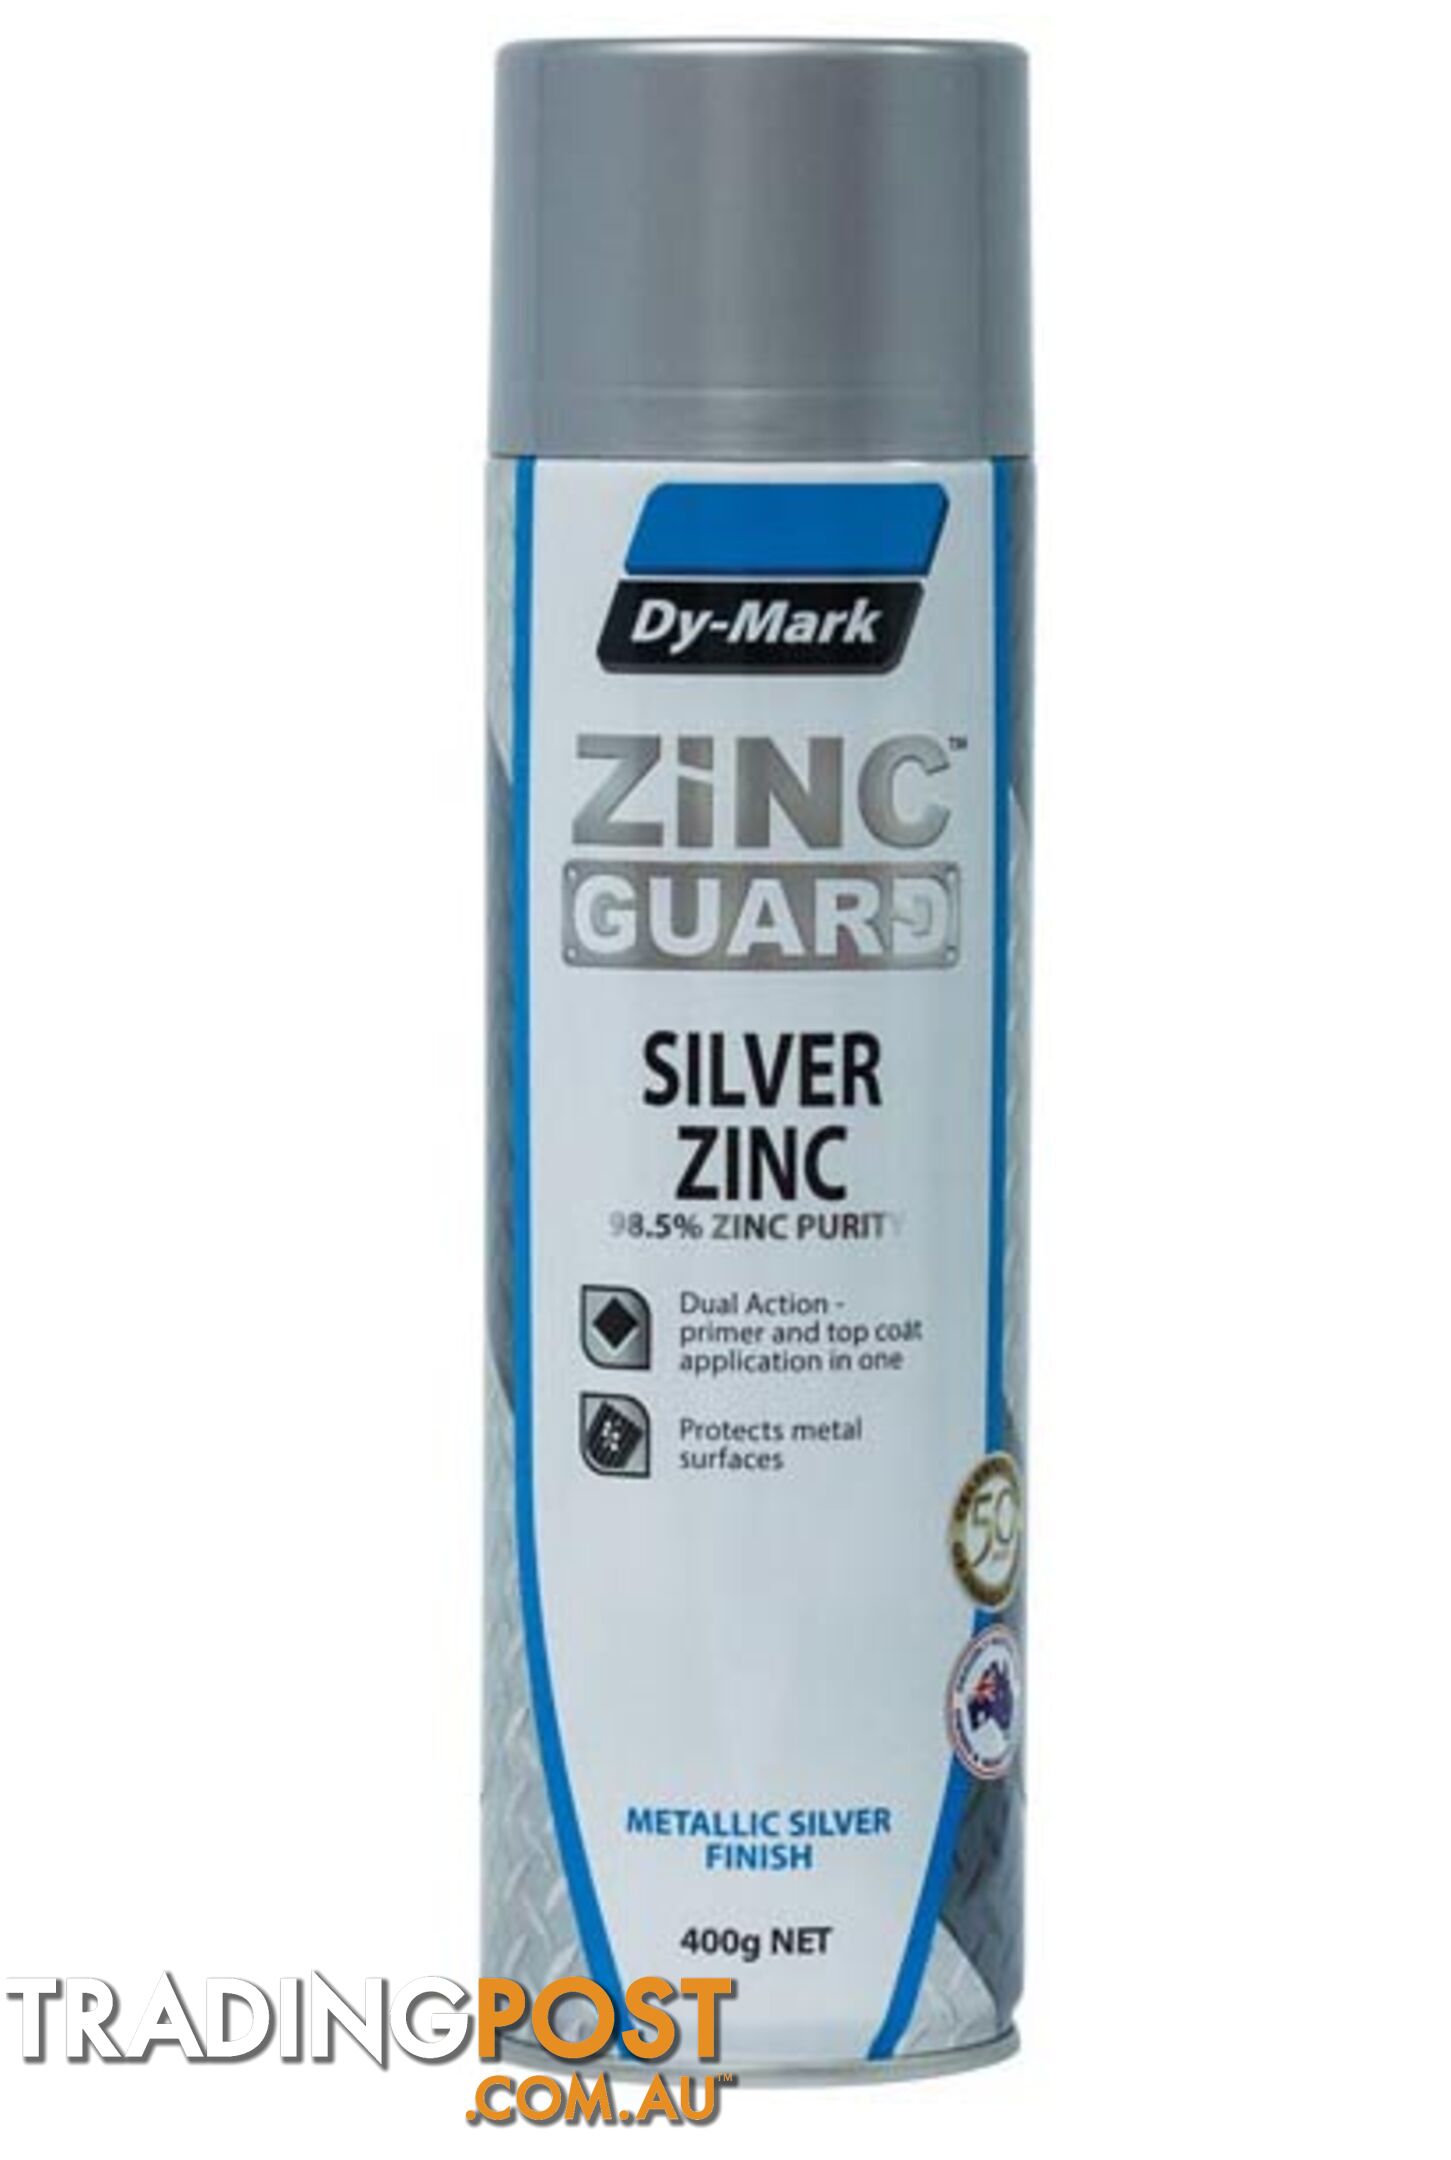 Zinc Guard Silver Zinc 230732008